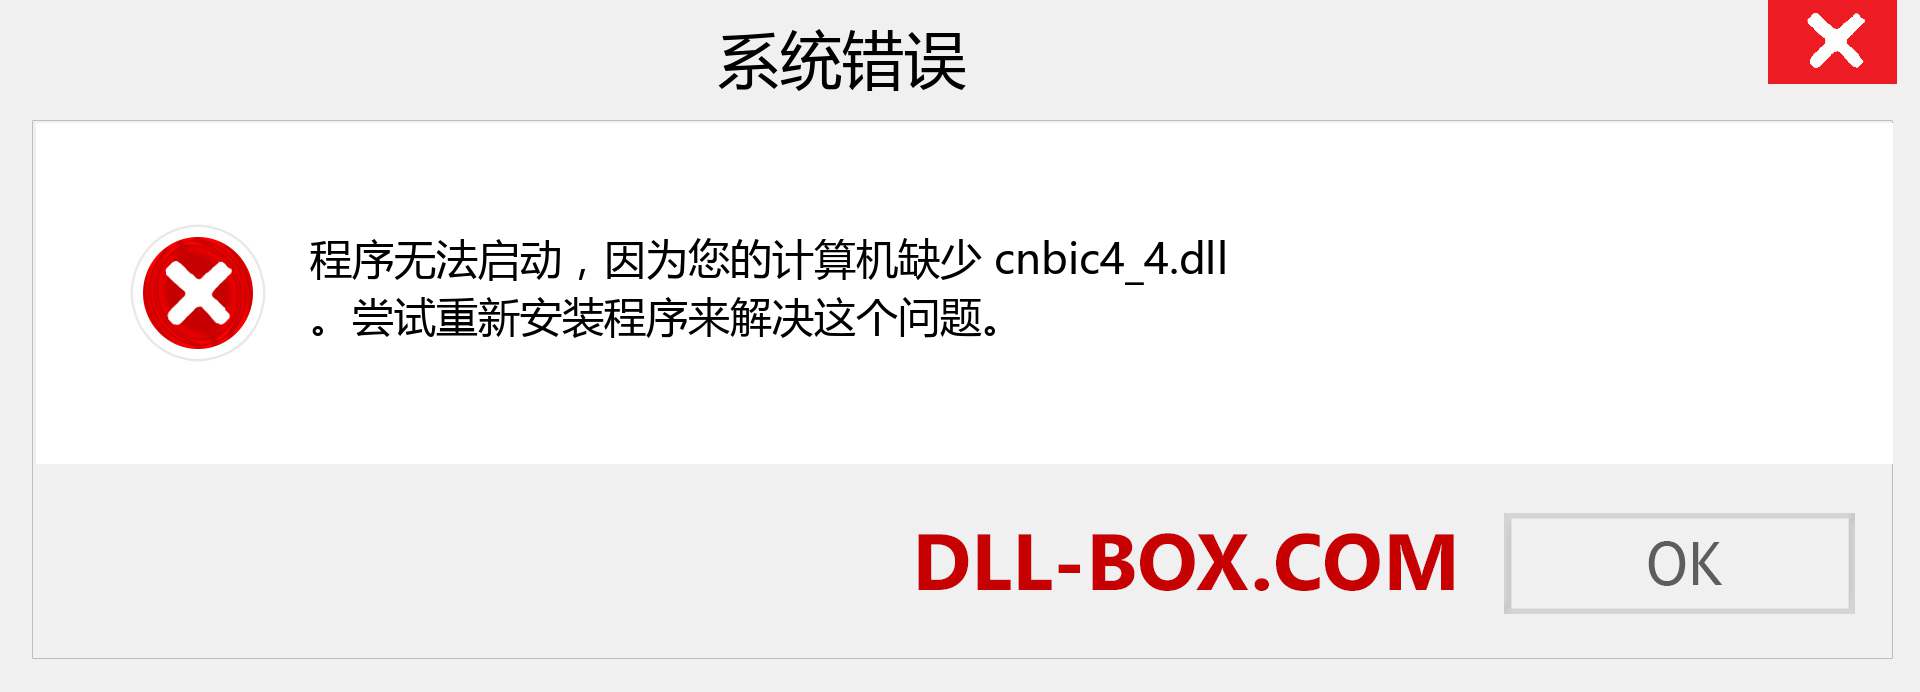 cnbic4_4.dll 文件丢失？。 适用于 Windows 7、8、10 的下载 - 修复 Windows、照片、图像上的 cnbic4_4 dll 丢失错误